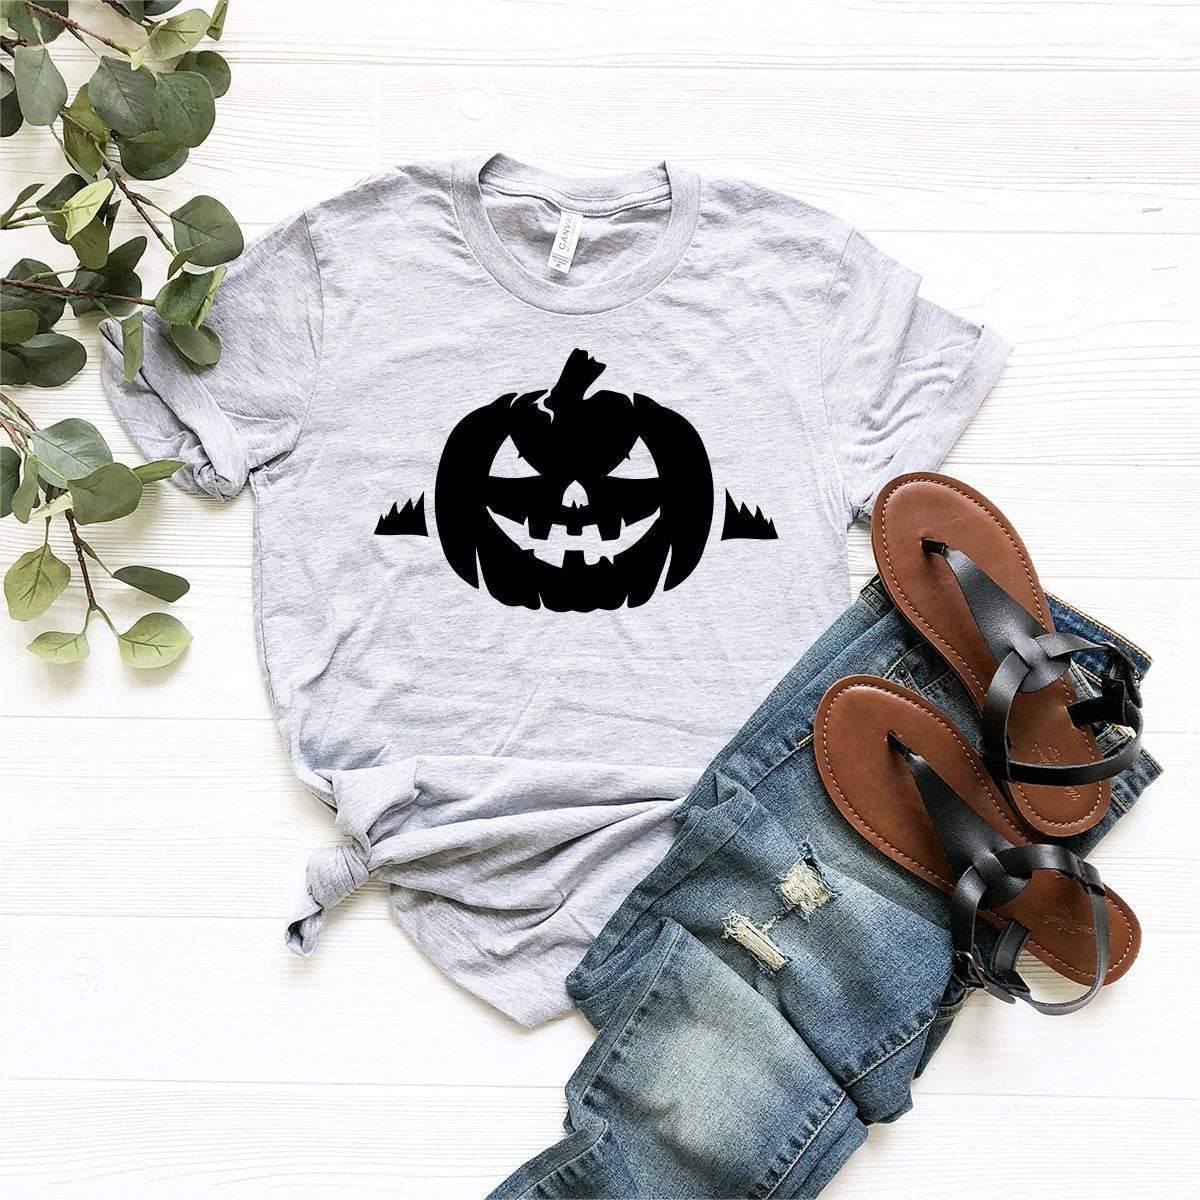 Pumpkin Halloween Shirt, Halloween T-Shirt, Fall Shirt, Halloween Gift, Funny Halloween Shirt, Pumpkin Shirt, Horror Shirt, Skull Shirt - Fastdeliverytees.com